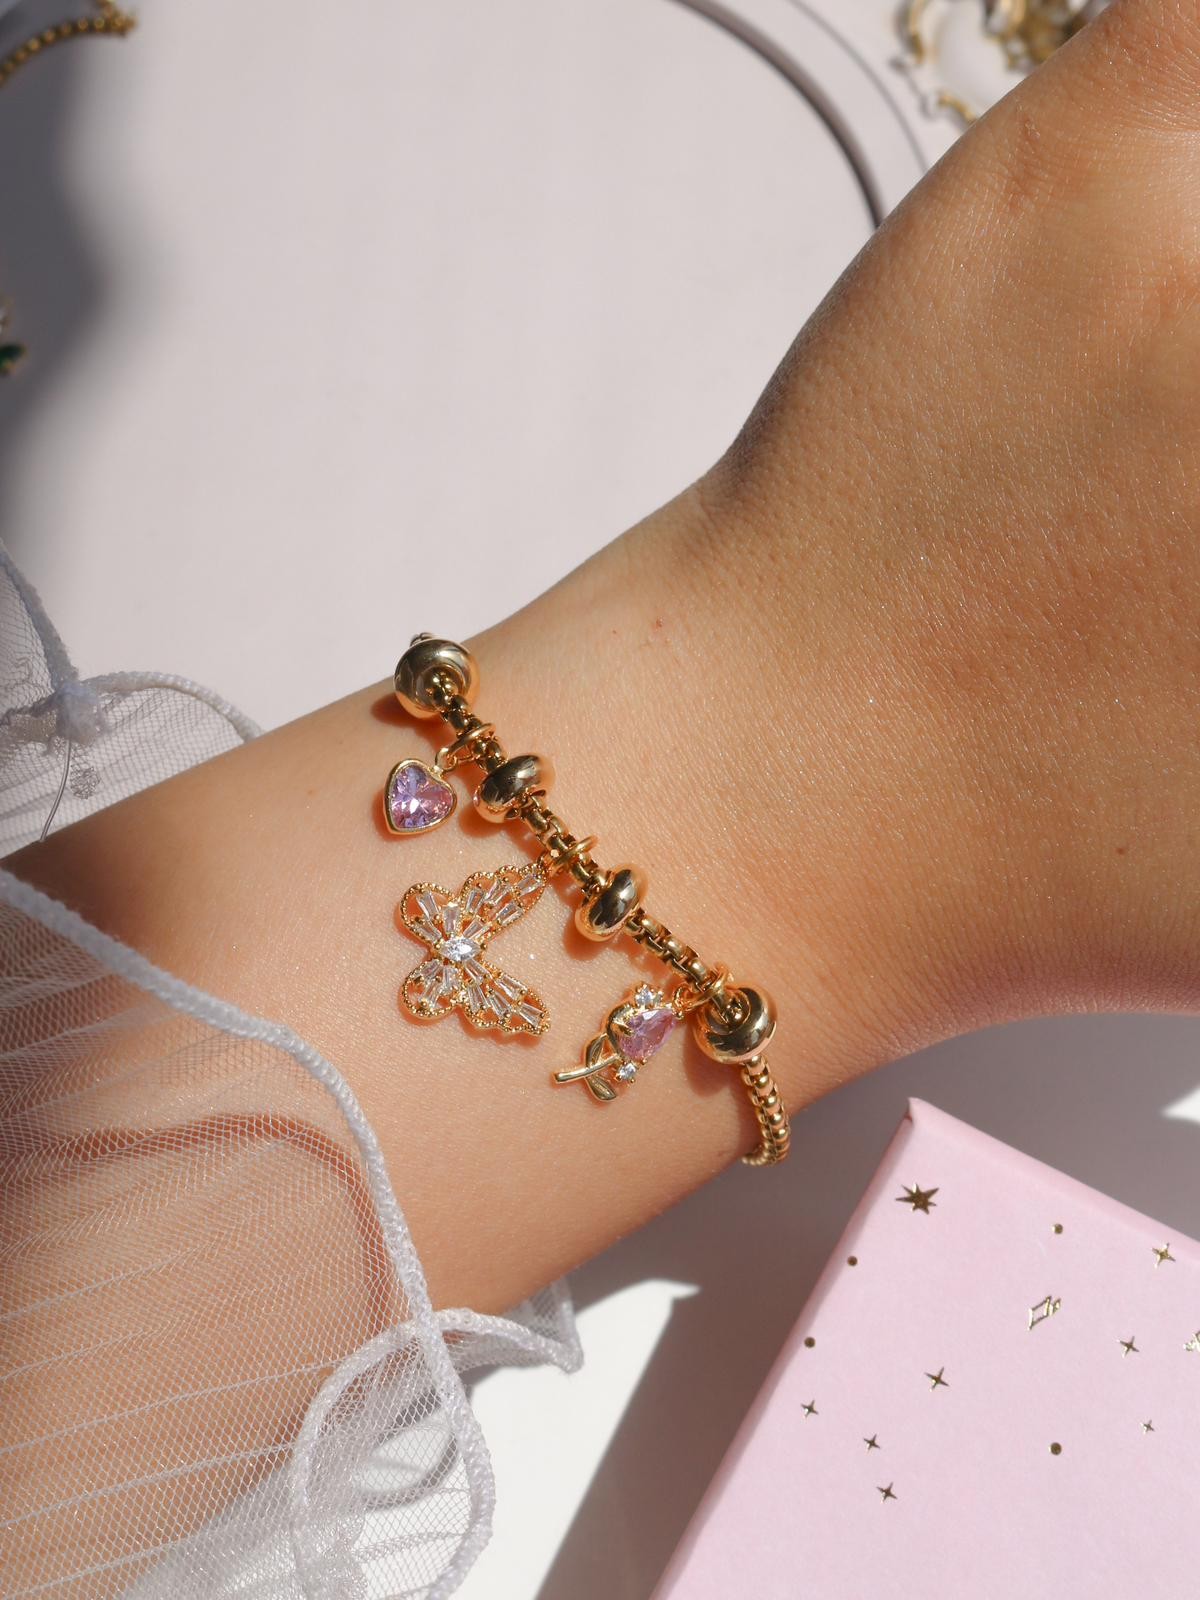 Tiny Butterfly Charm Bracelet